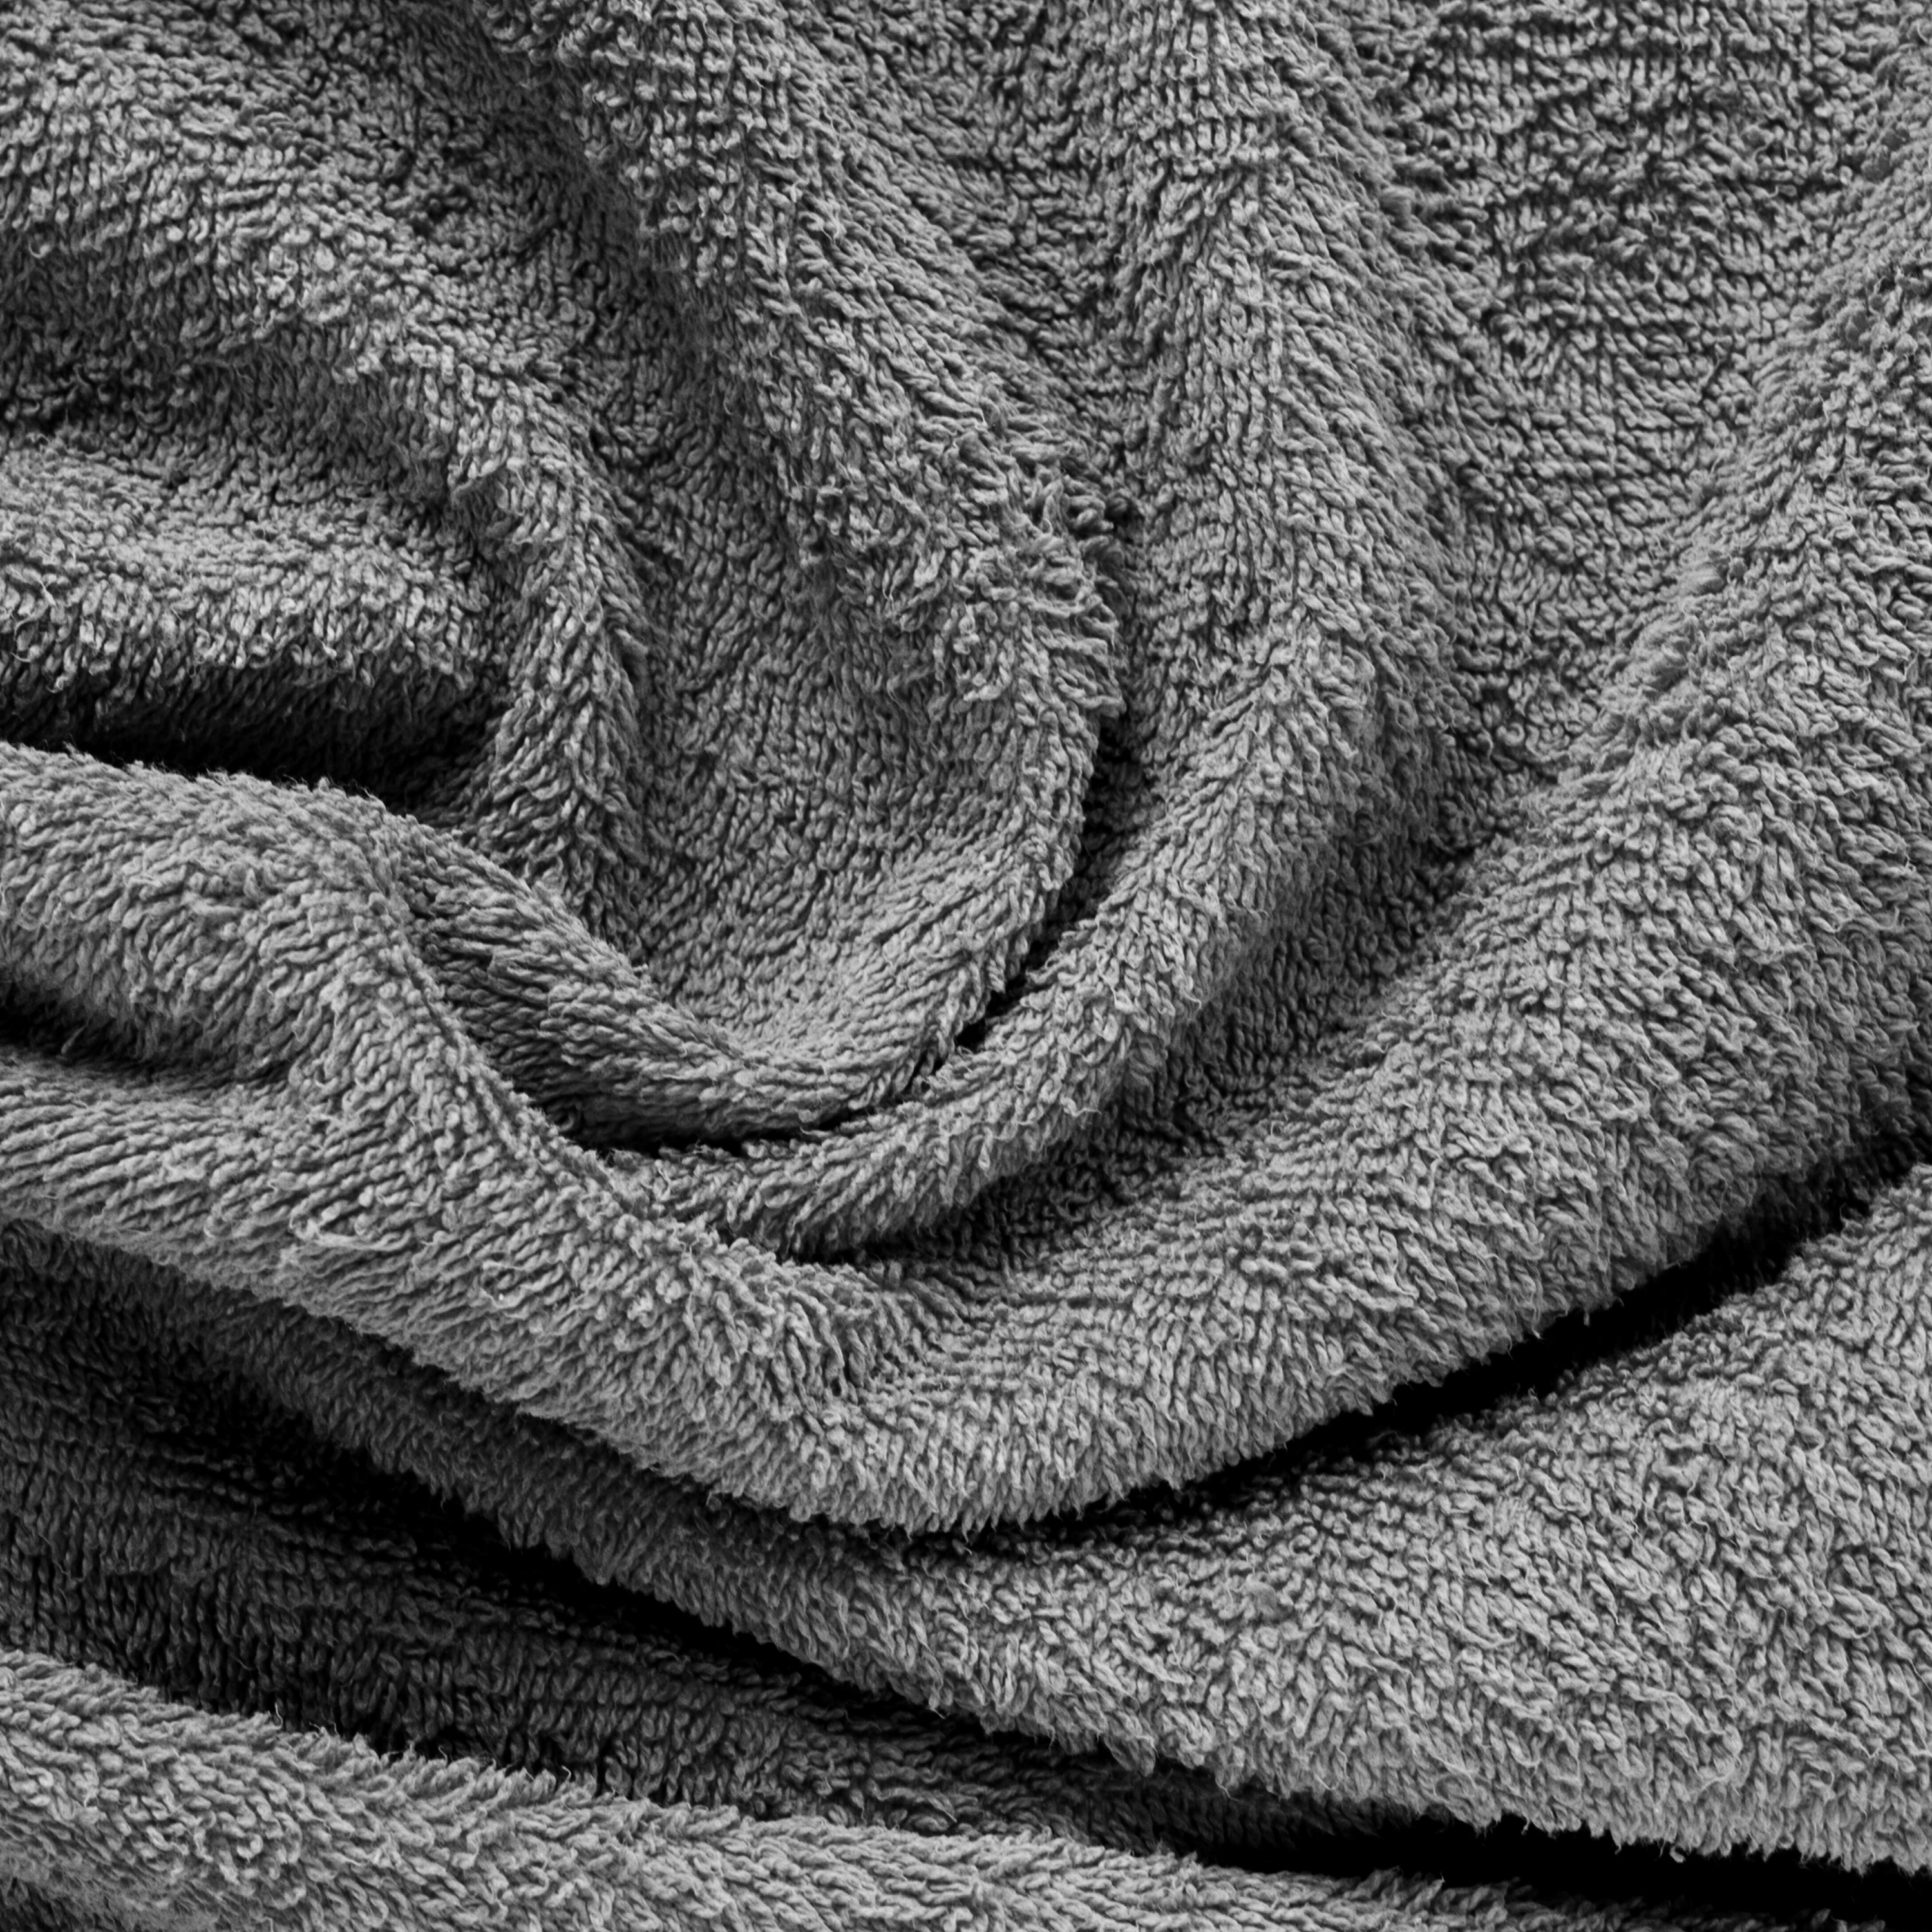 Aquacado 68 x 136 cm Bath Towel Set of 2 Charcoal Grey & Rust